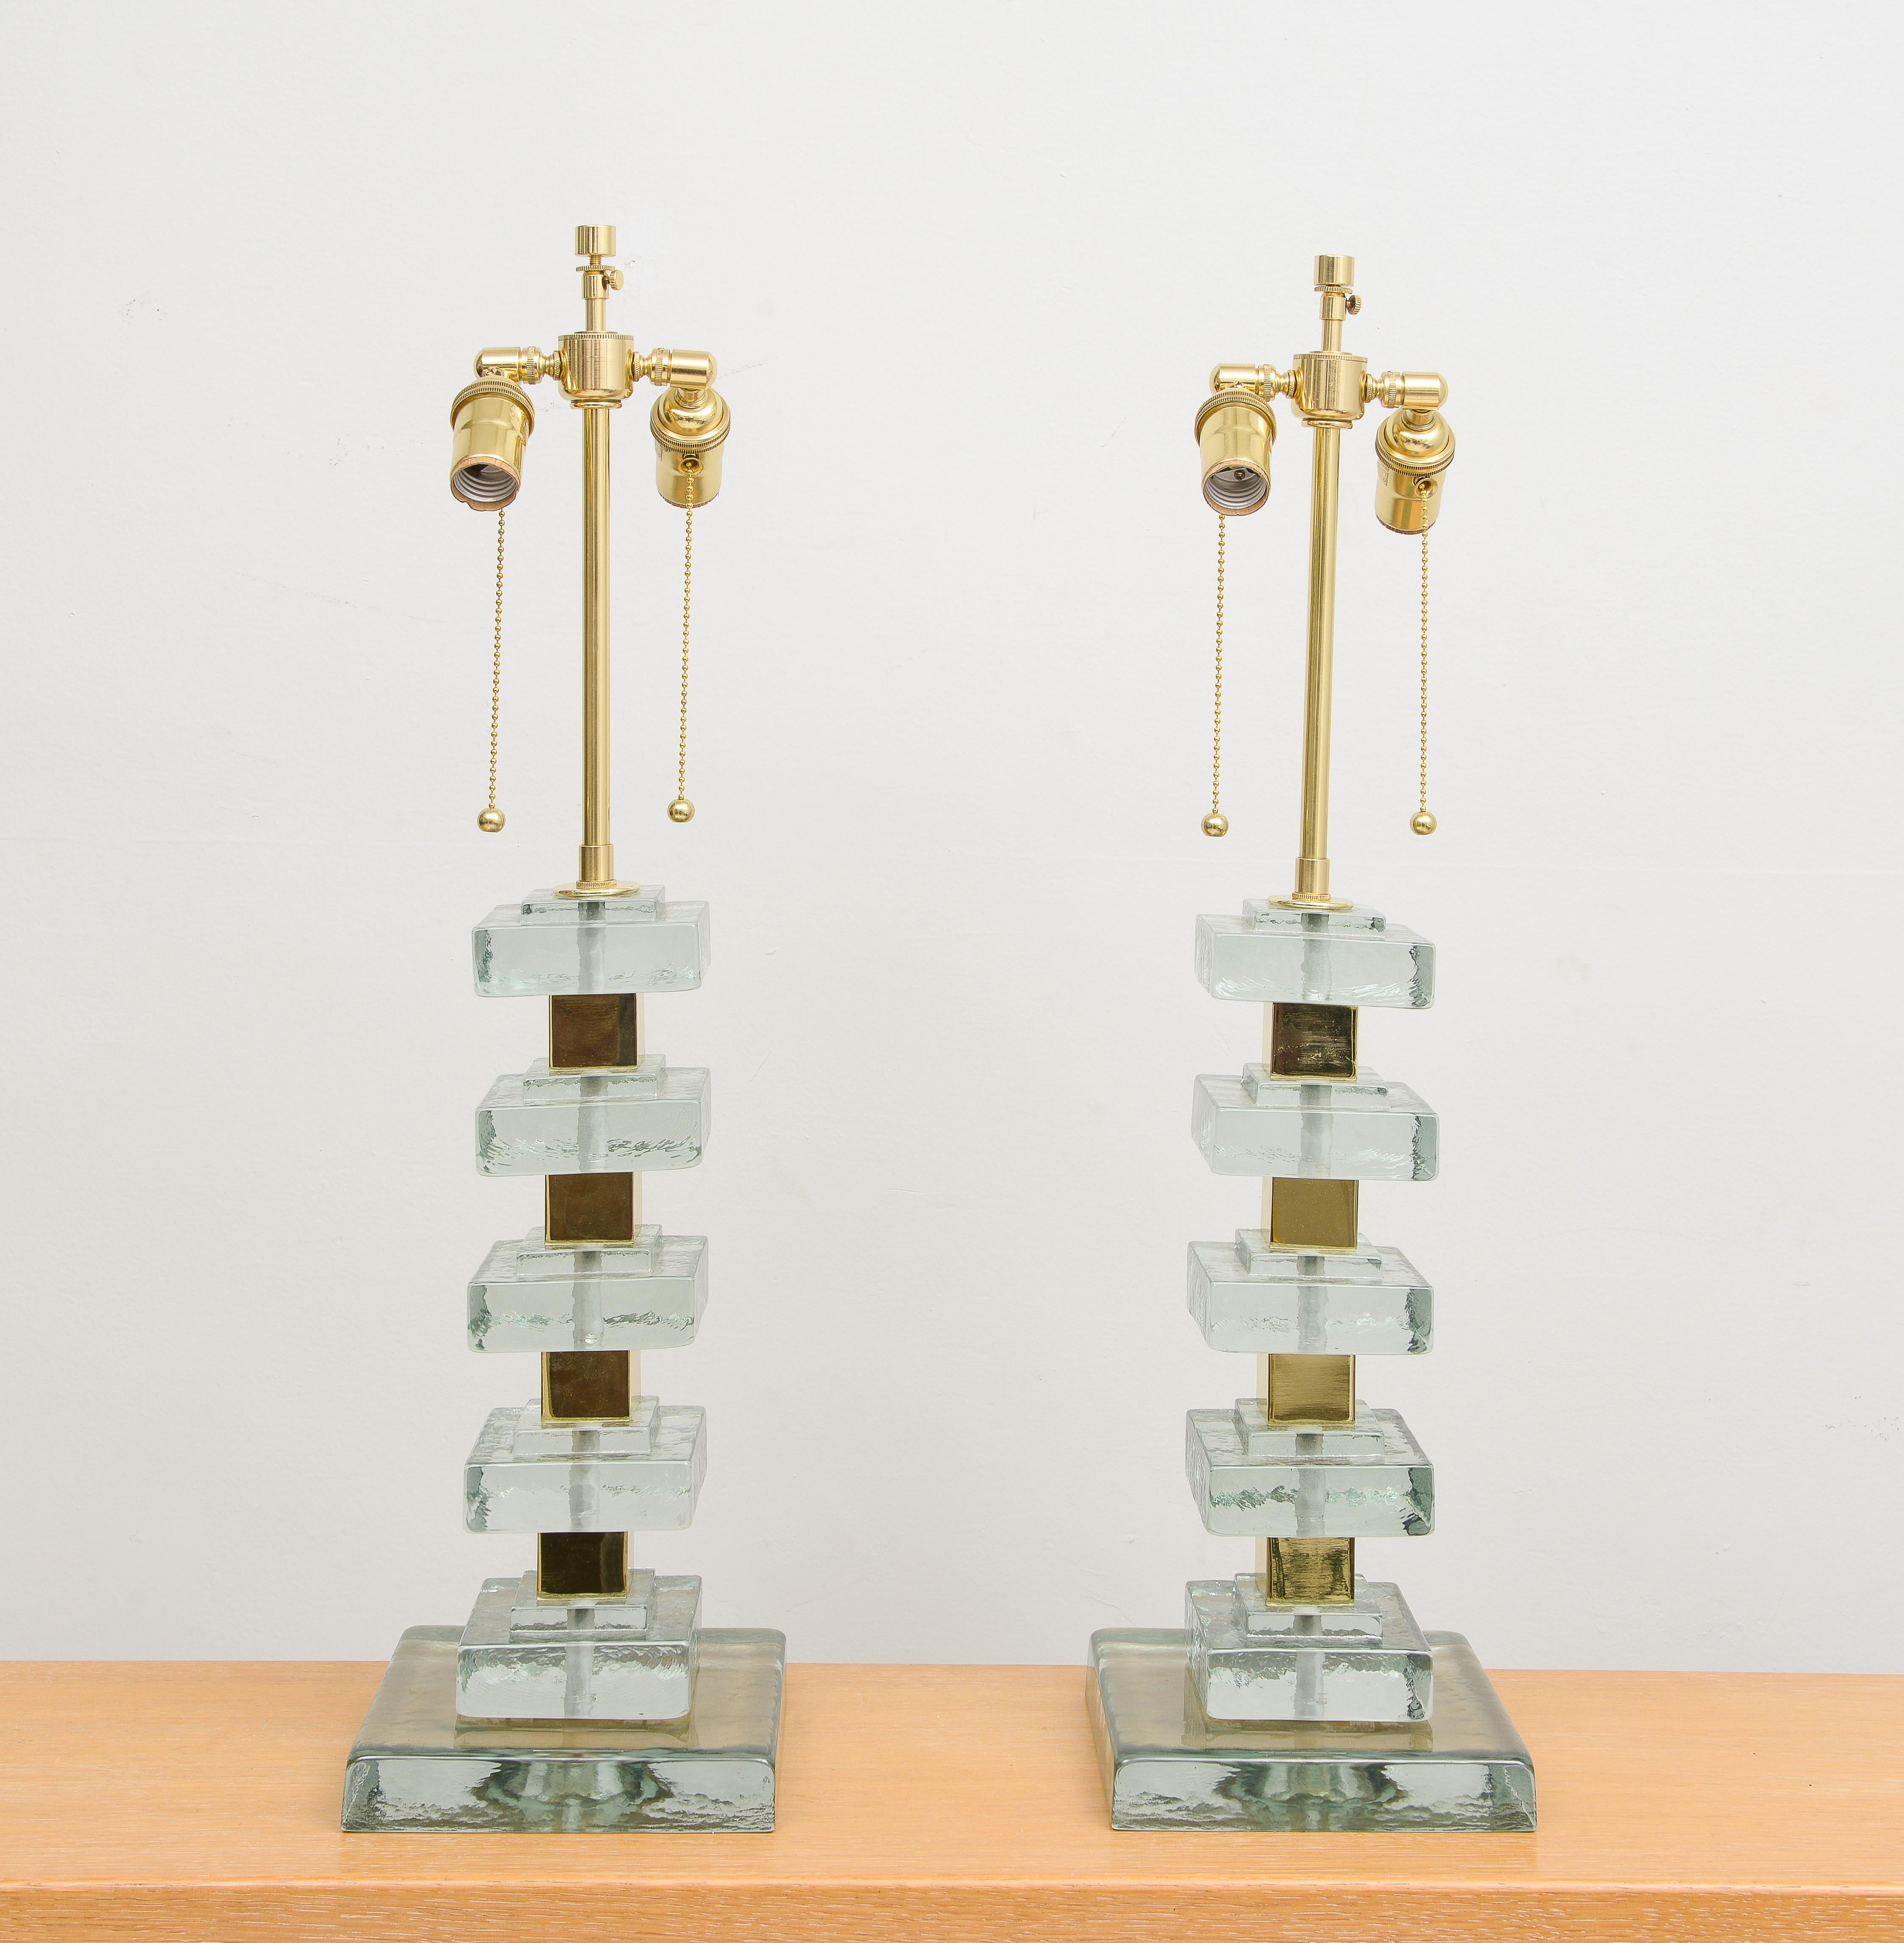 Paire de lampes italiennes contemporaines en verre de Murano et laiton. Ensemble de 2.
La base est de 7